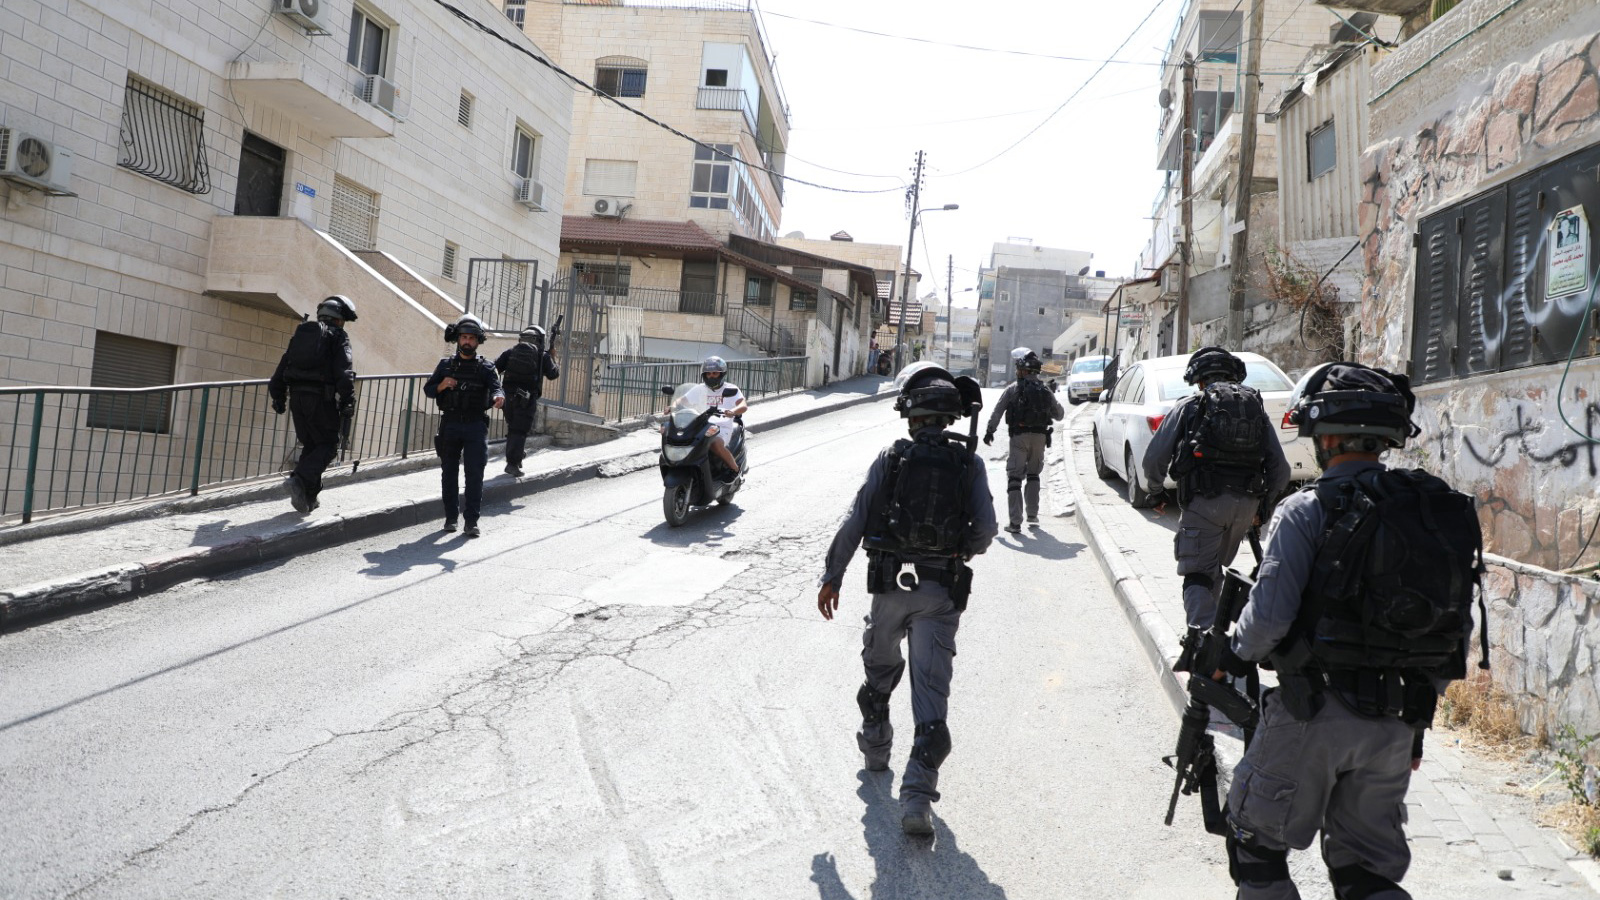 ‪مجموعة من جنود الاحتلال خلال اقتحام بلدة العيساوية شرقي القدس‬ مجموعة من جنود الاحتلال خلال اقتحام بلدة العيساوية شرقي القدس (الجزيرة)